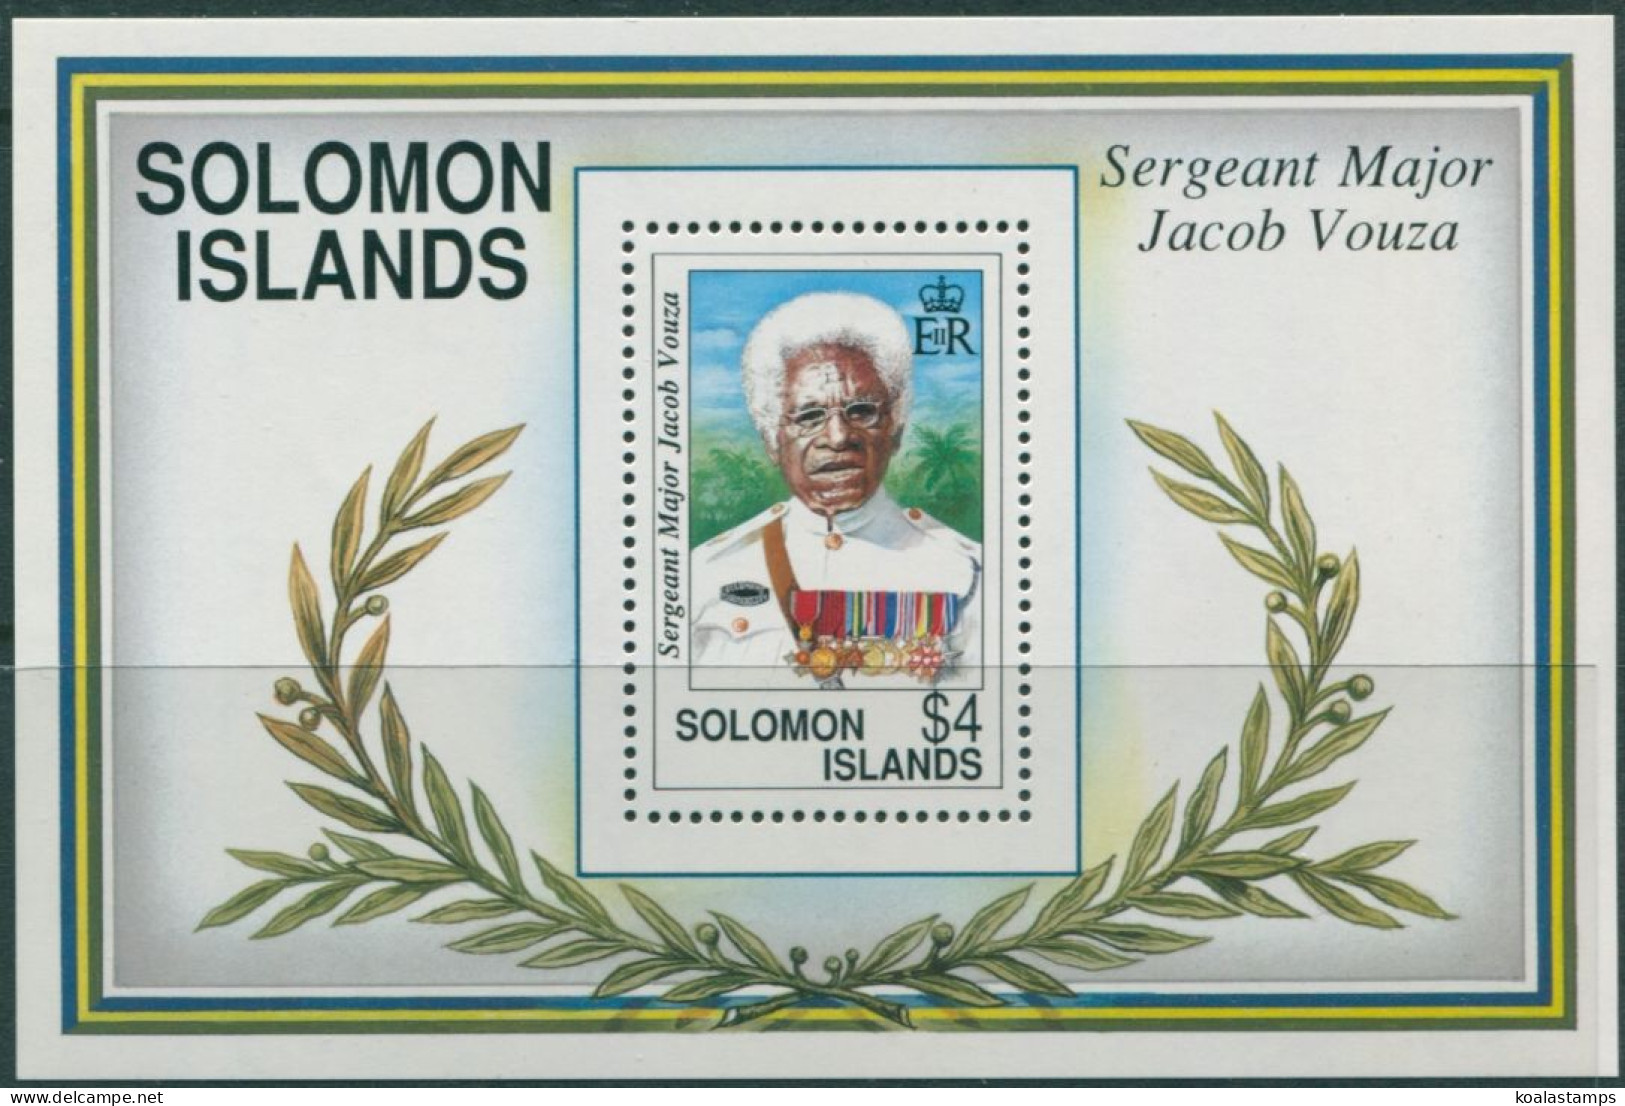 Solomon Islands 1992 SG727 WWII Jacob Vouza MS MNH - Solomon Islands (1978-...)